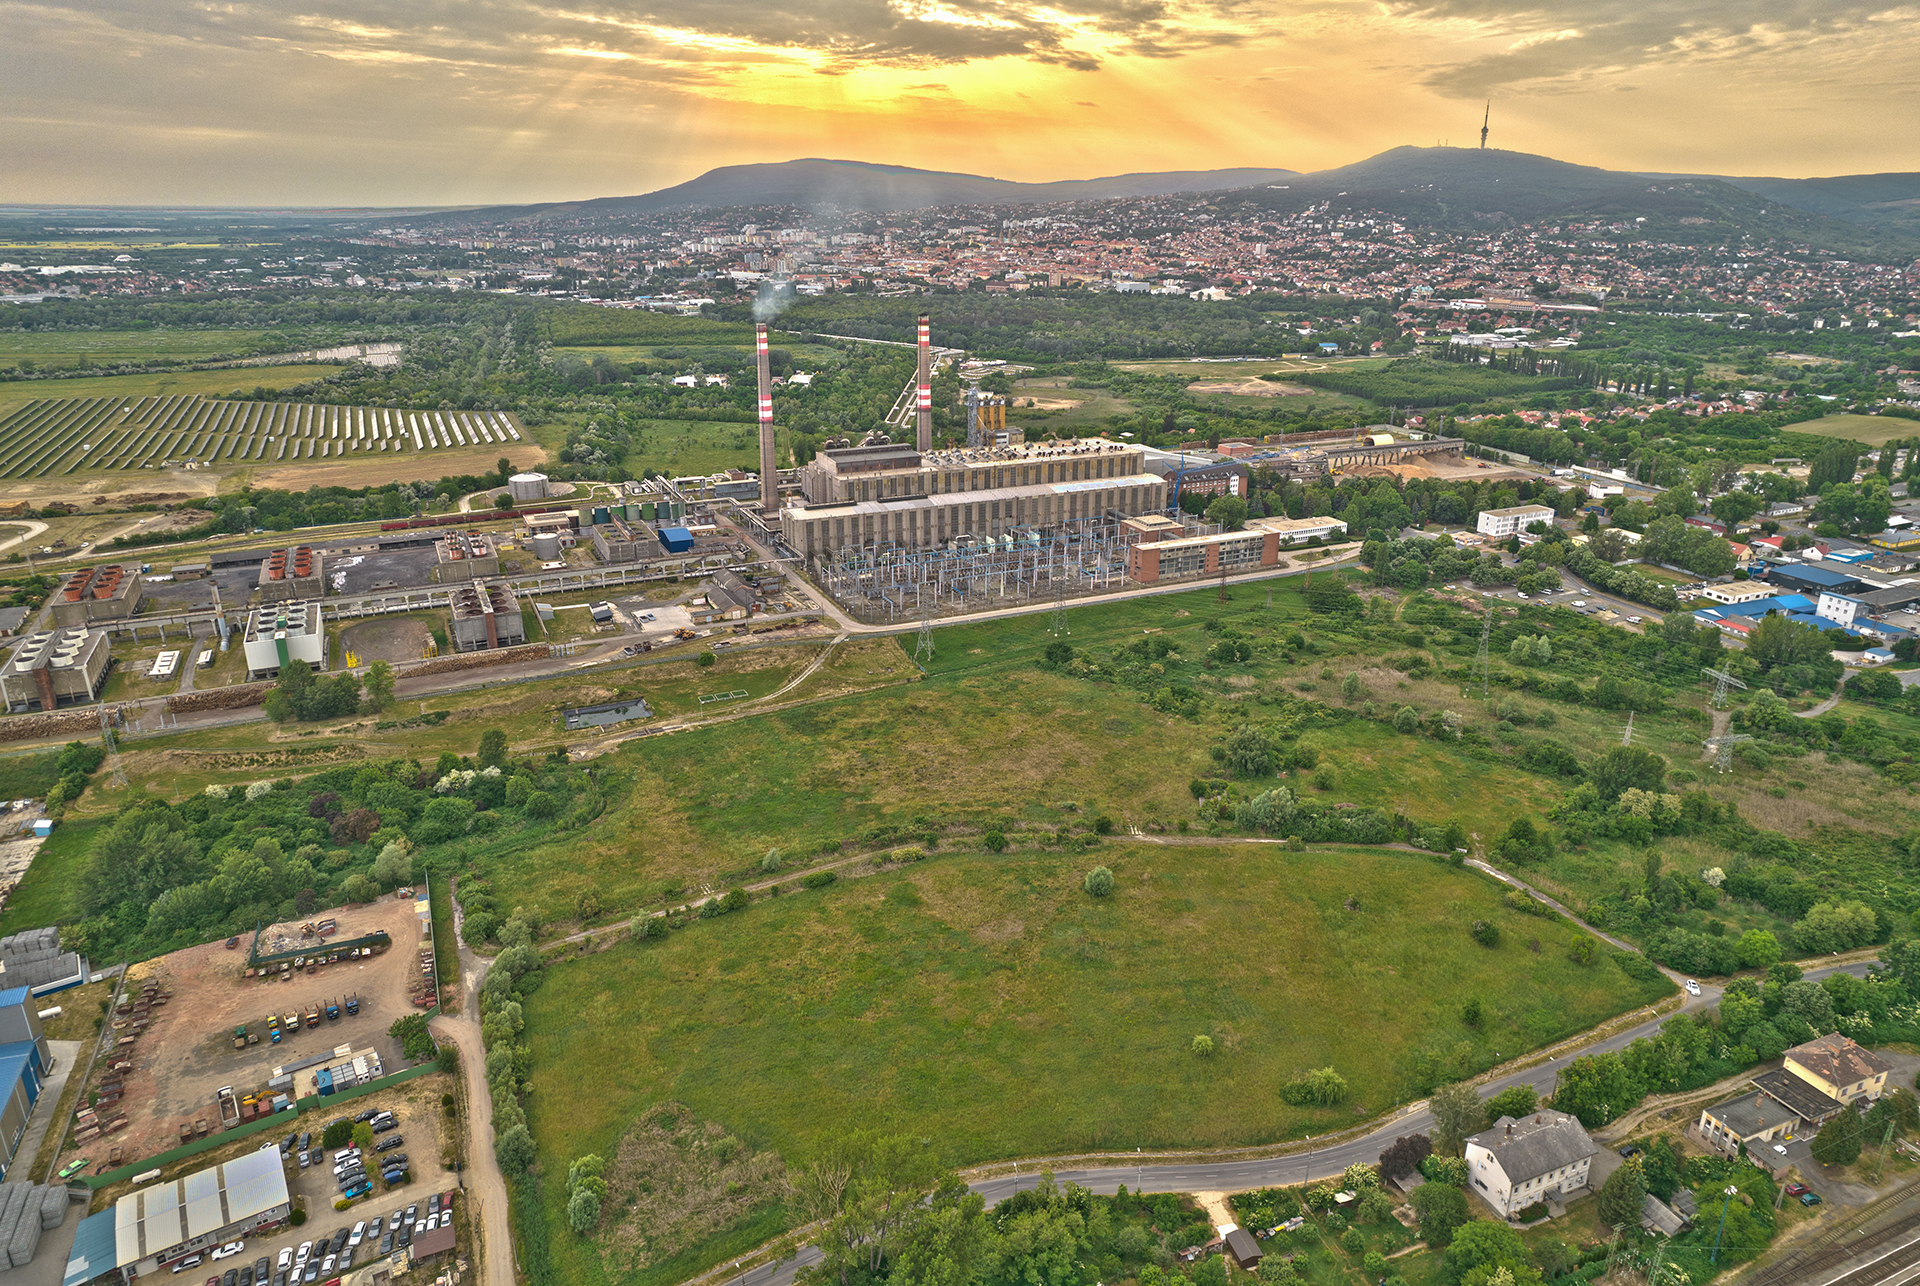 Eladó 5456 m² iparterület Pécs déli részén kedvező áron